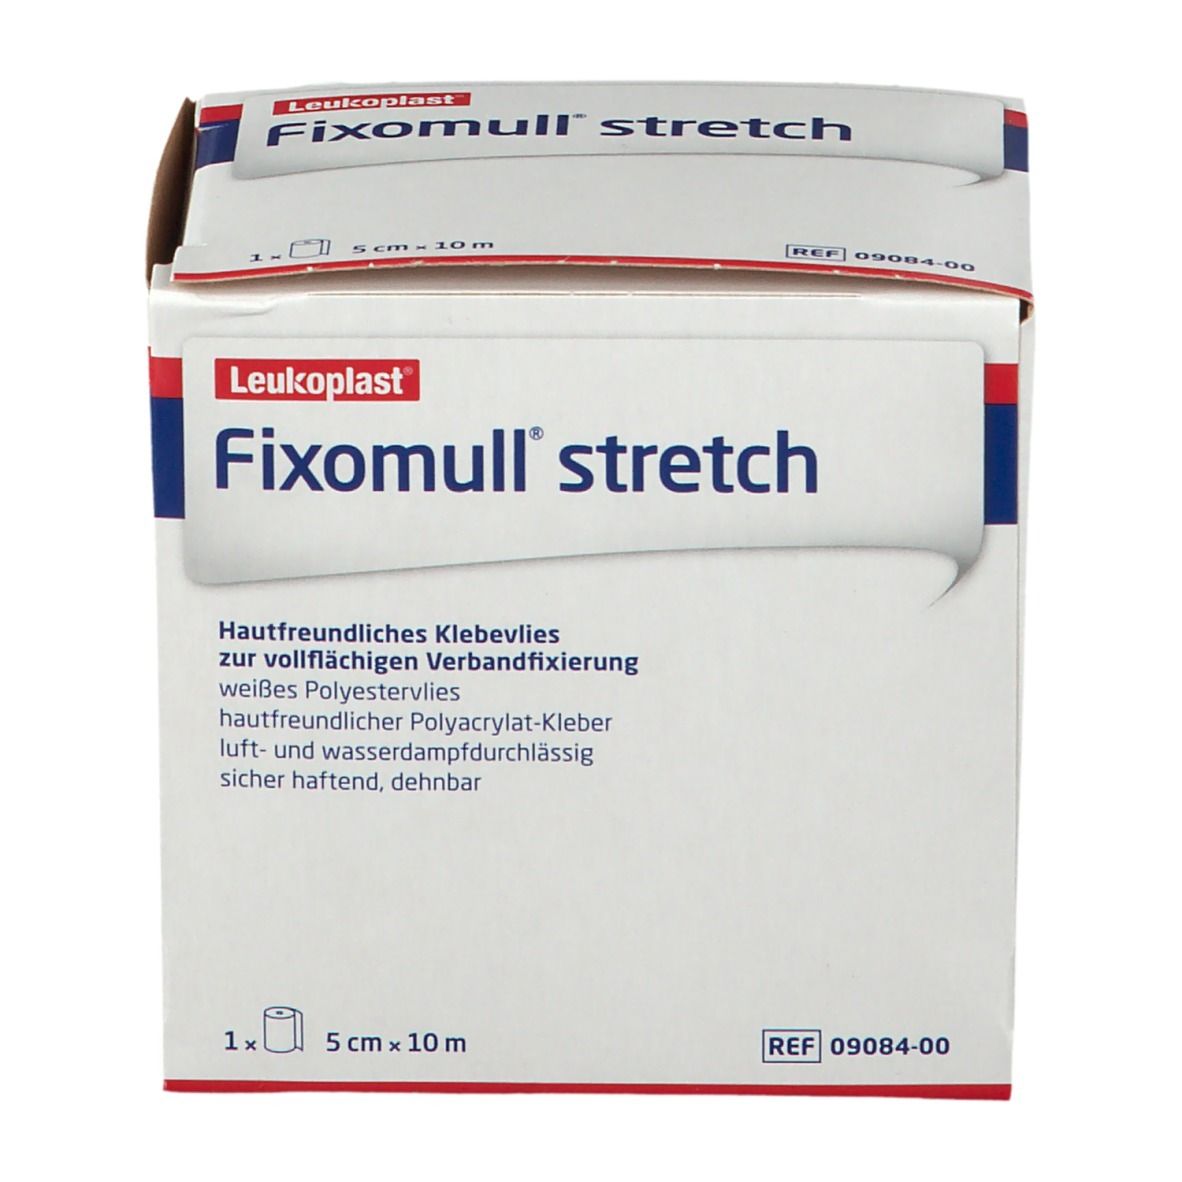 Fixomull® stretch 5 cm x 10 m